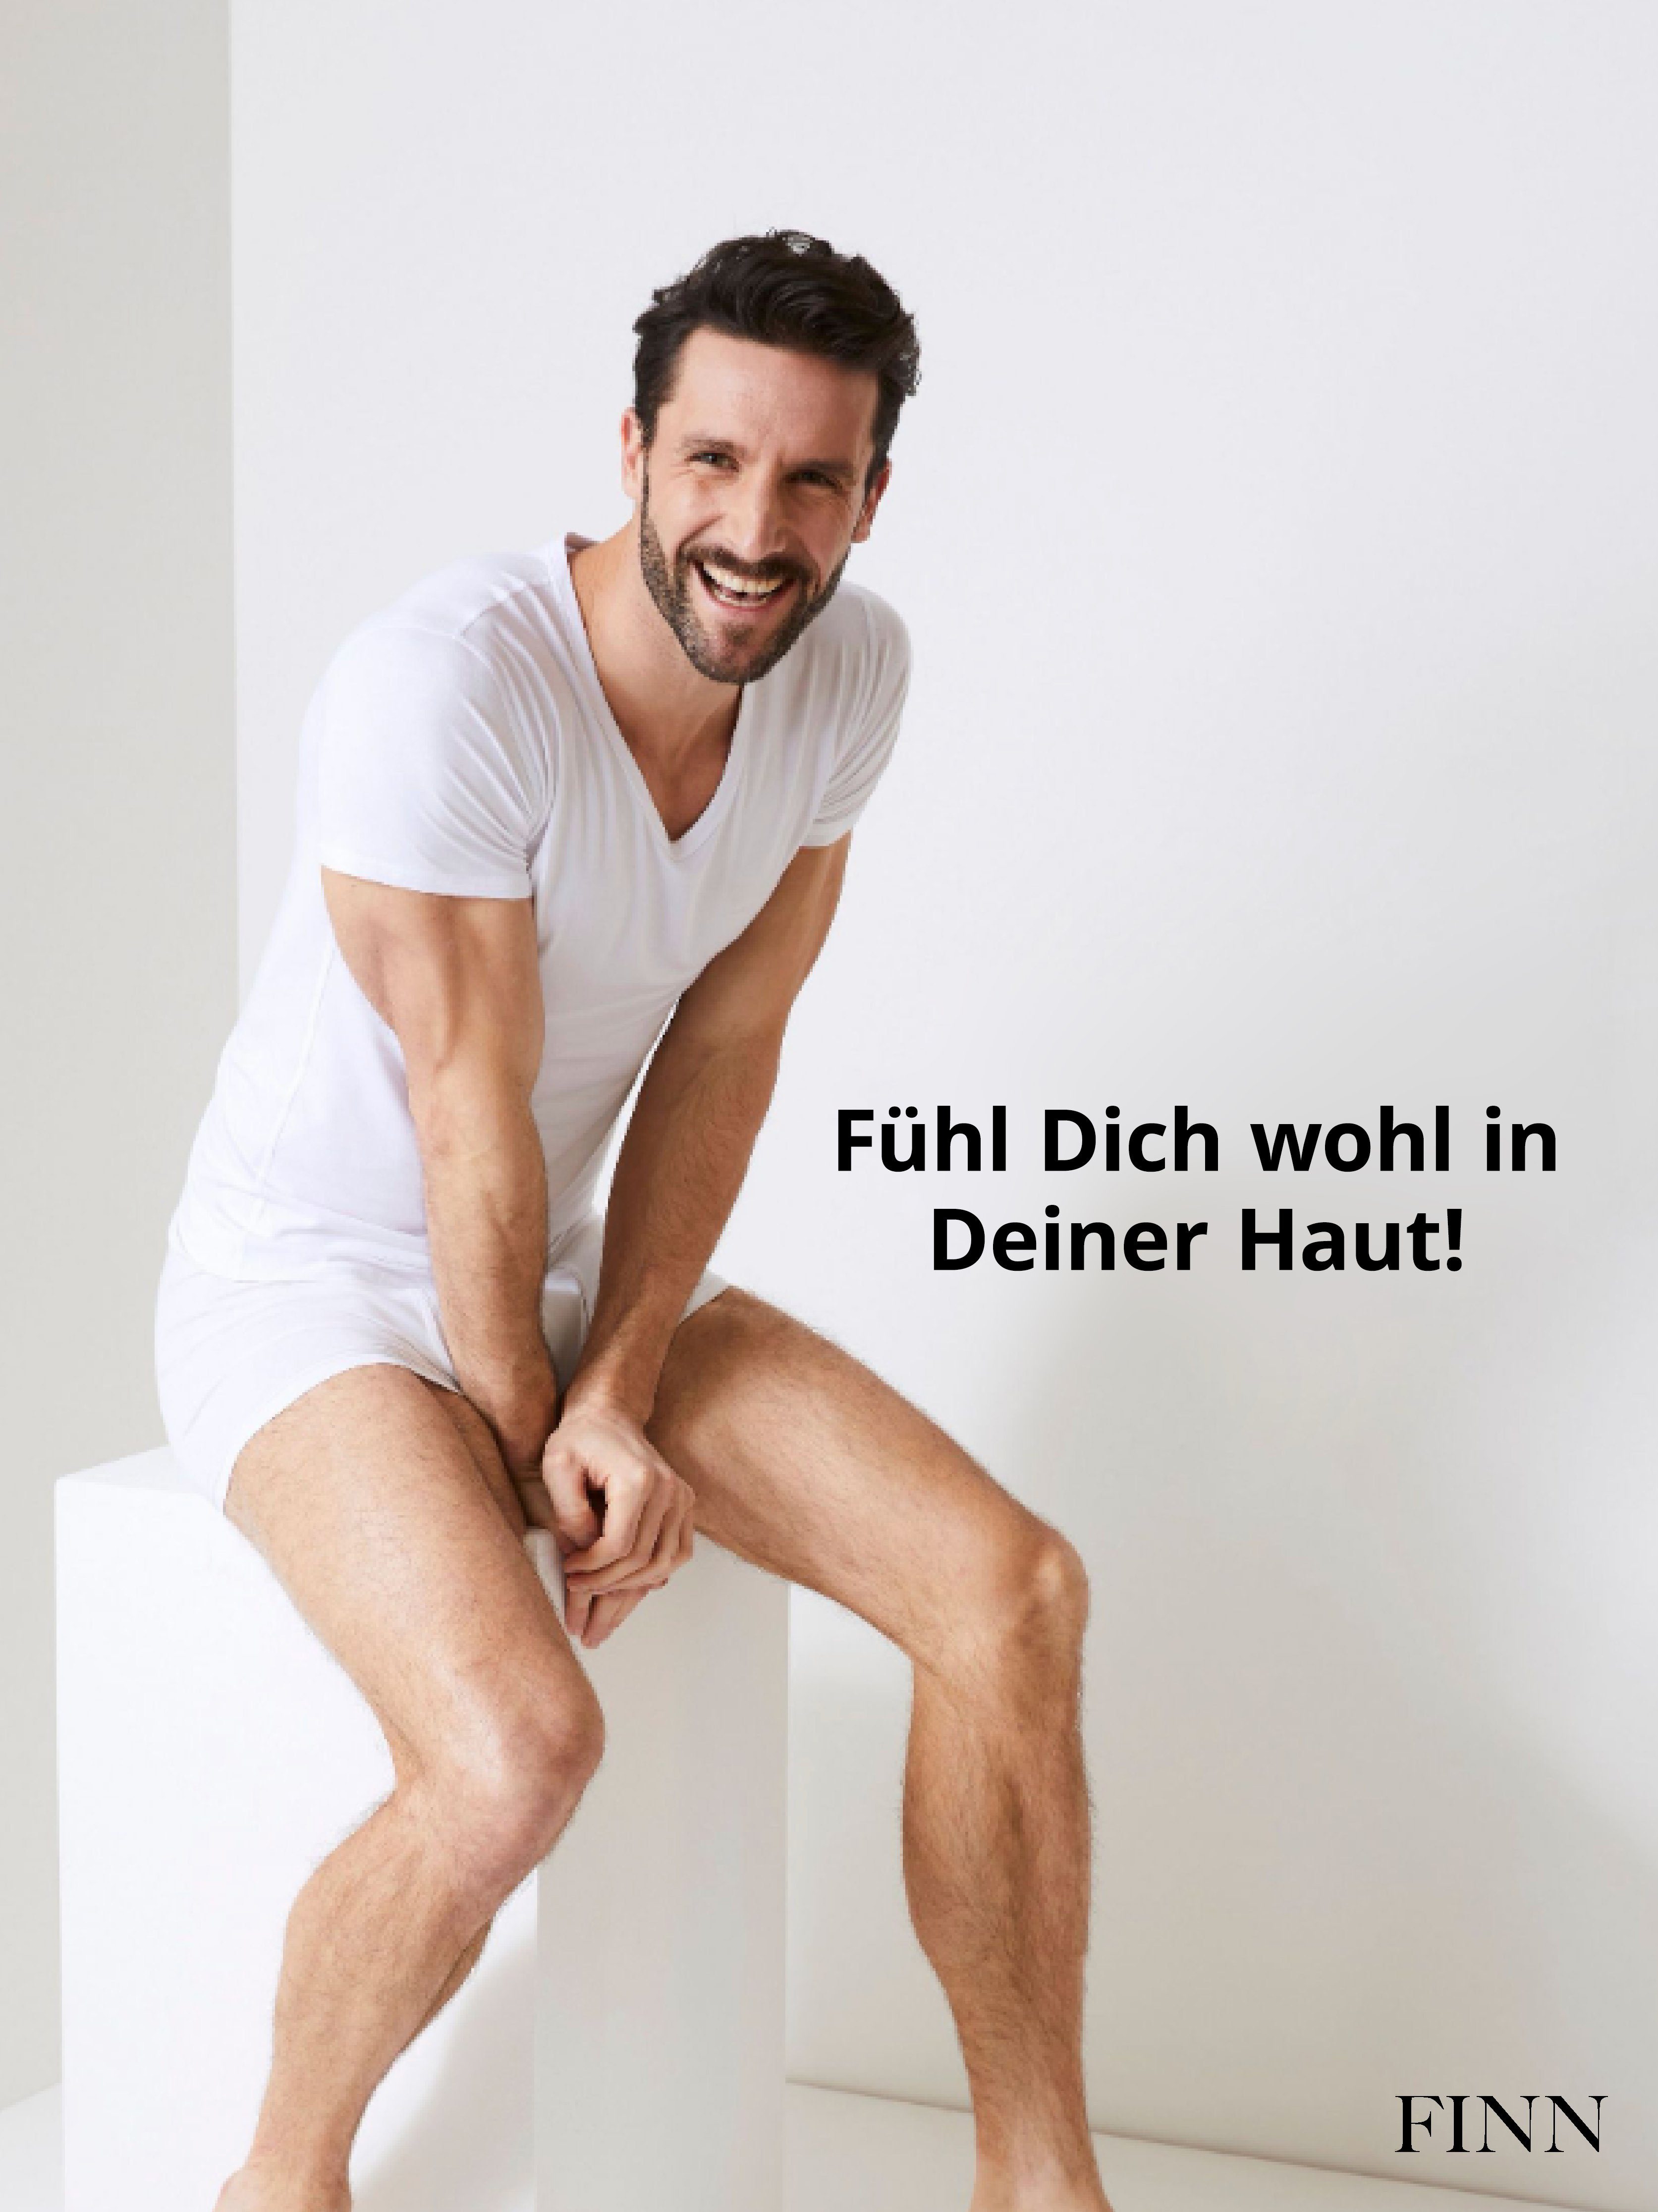 FINN Design Unterhemd Schweißflecken, Anti-Schweiß garantierte Schutz vor Herren Wirkung 100% Unterhemd